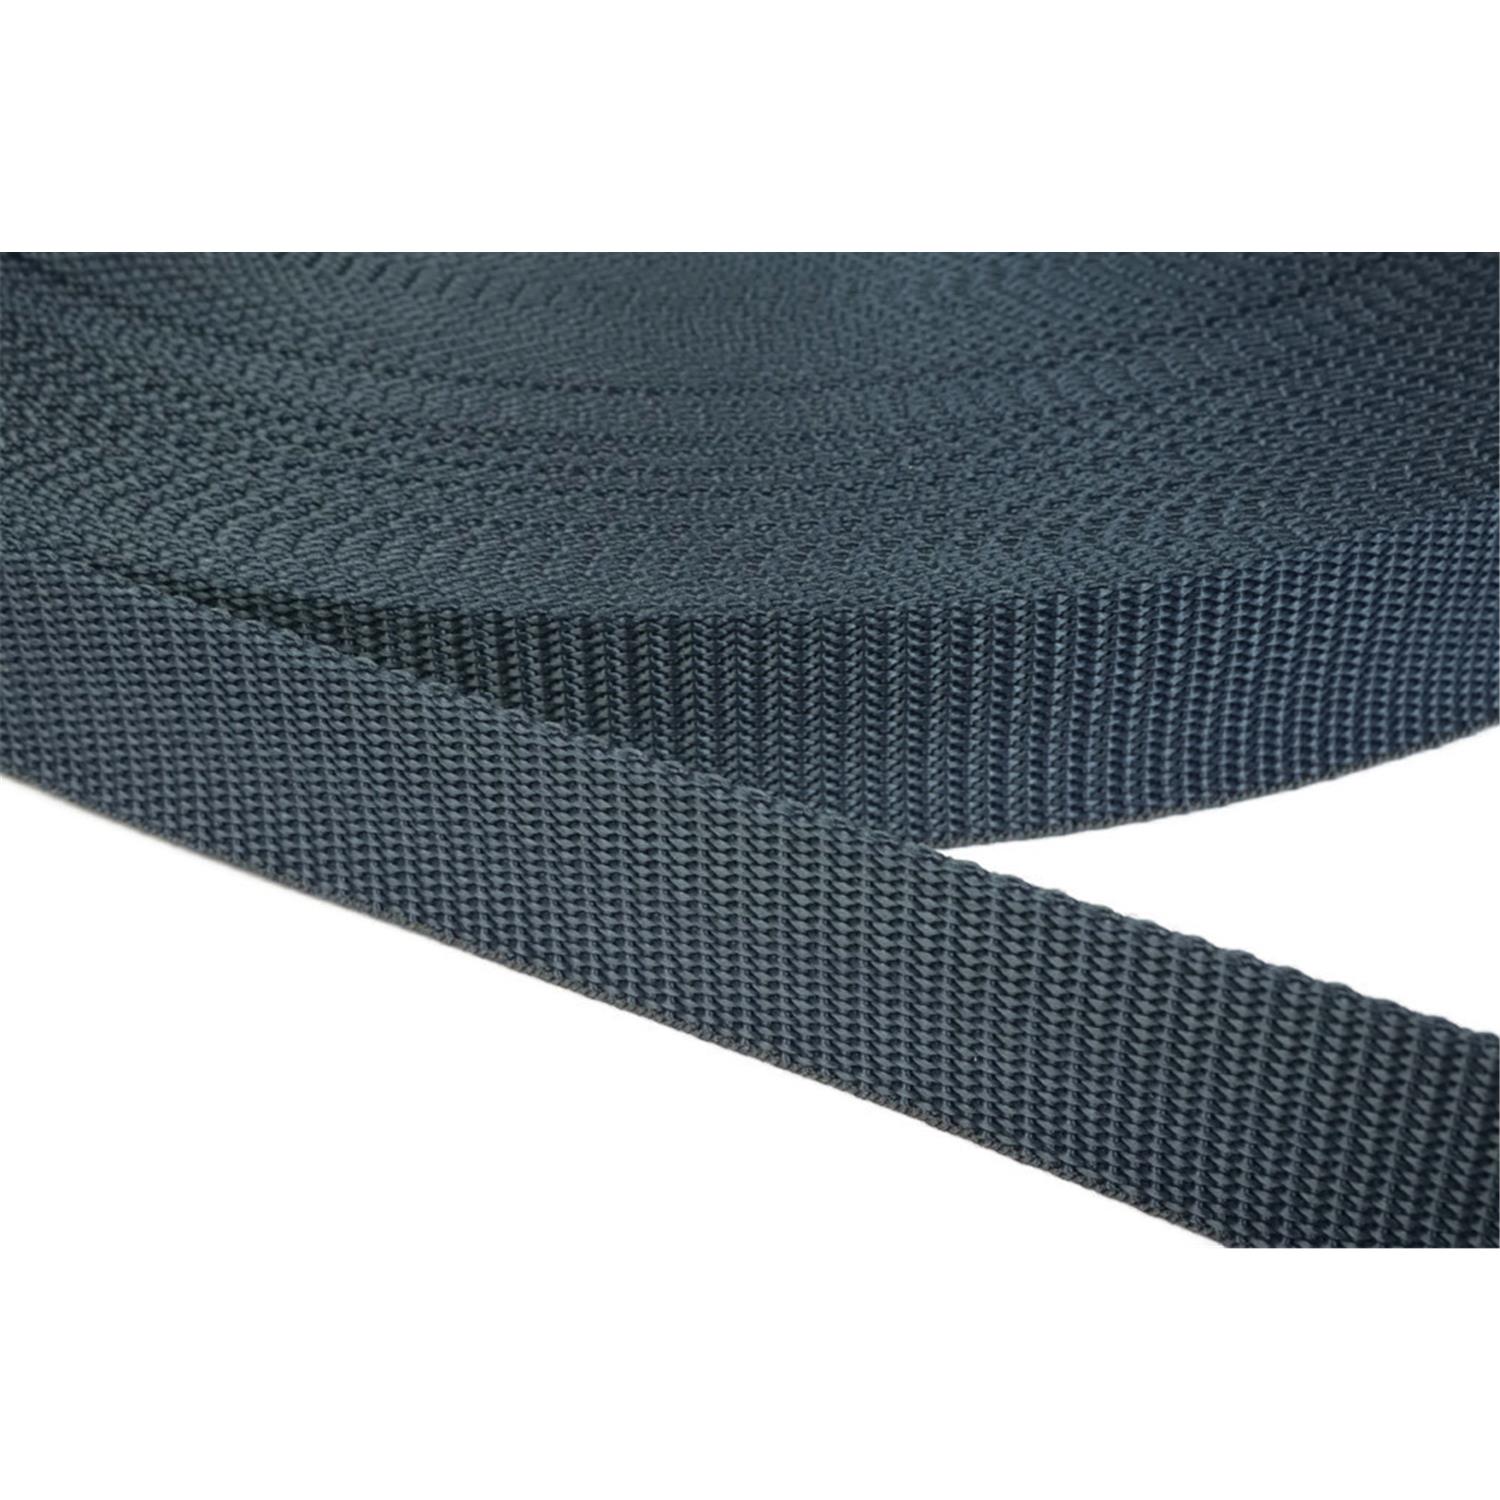 Gurtband 50mm breit aus Polypropylen in 41 Farben 40 - dunkelgrau/blau 6 Meter